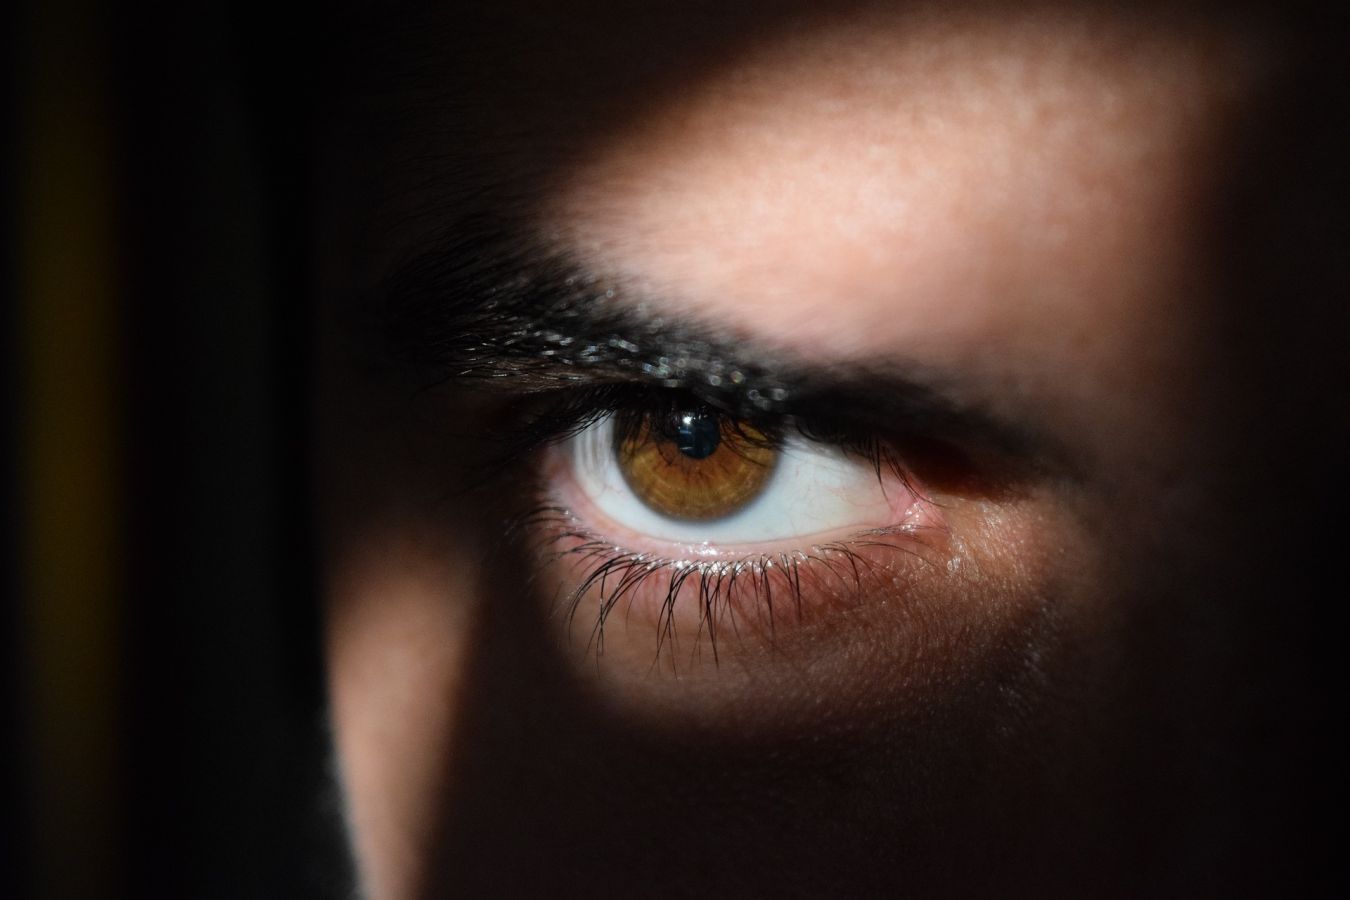 Co všechno může být rizikovým faktorem očních nemocí?